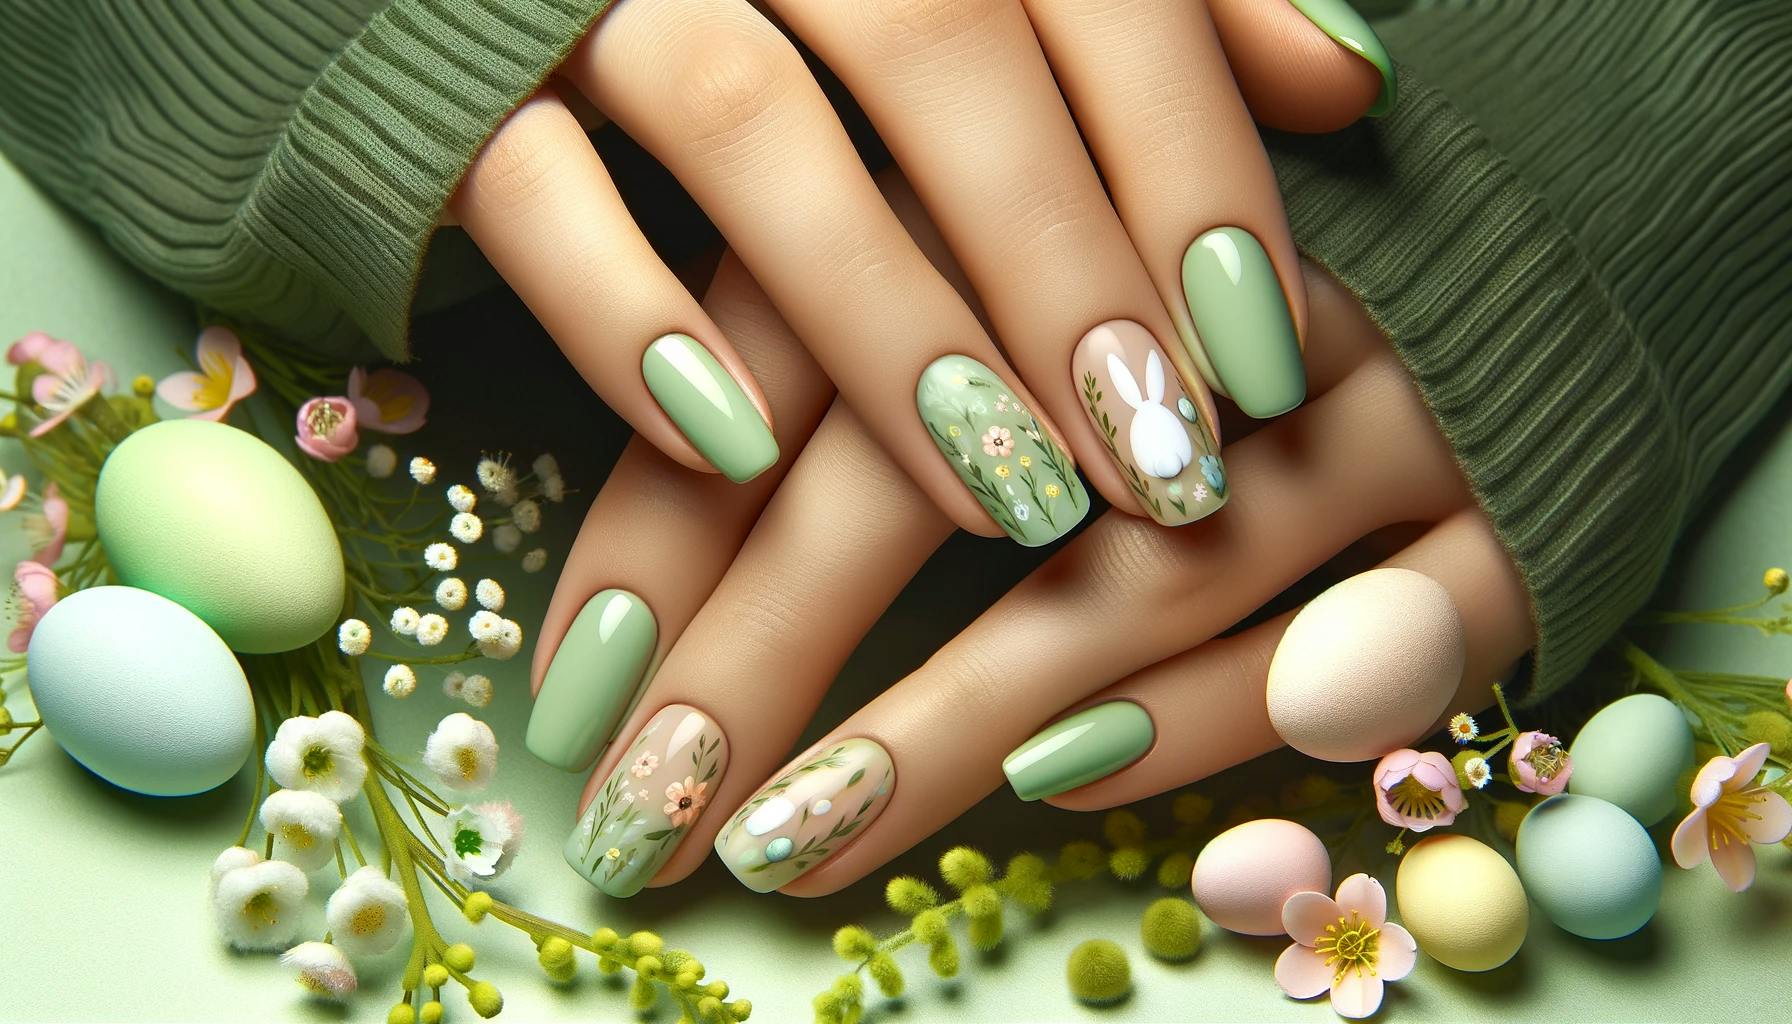 Zielone paznokcie na święta wielkanocne z delikatnymi motywami wiosennymi, idealne do celebracji wiosennego ducha i radości, na tle kwitnących kwiatów i pastelowych barw światecznych